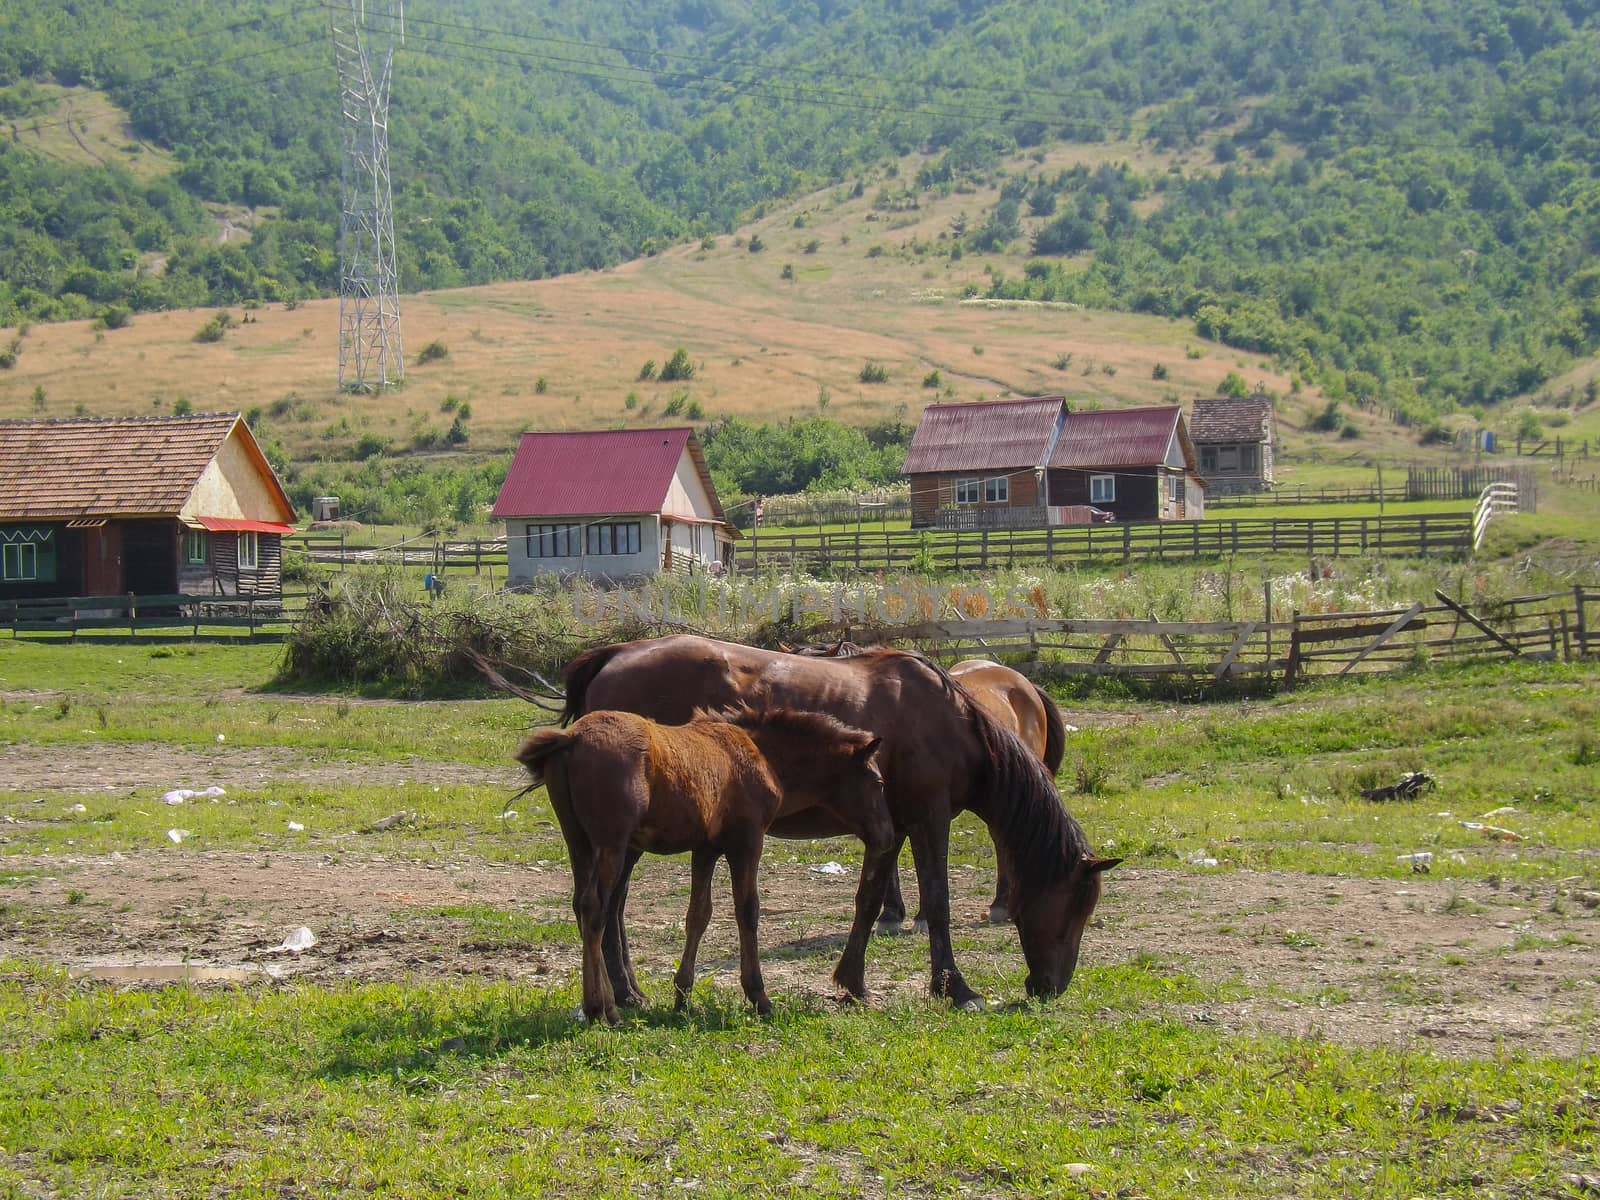 Typical village in Transylvania,Romania